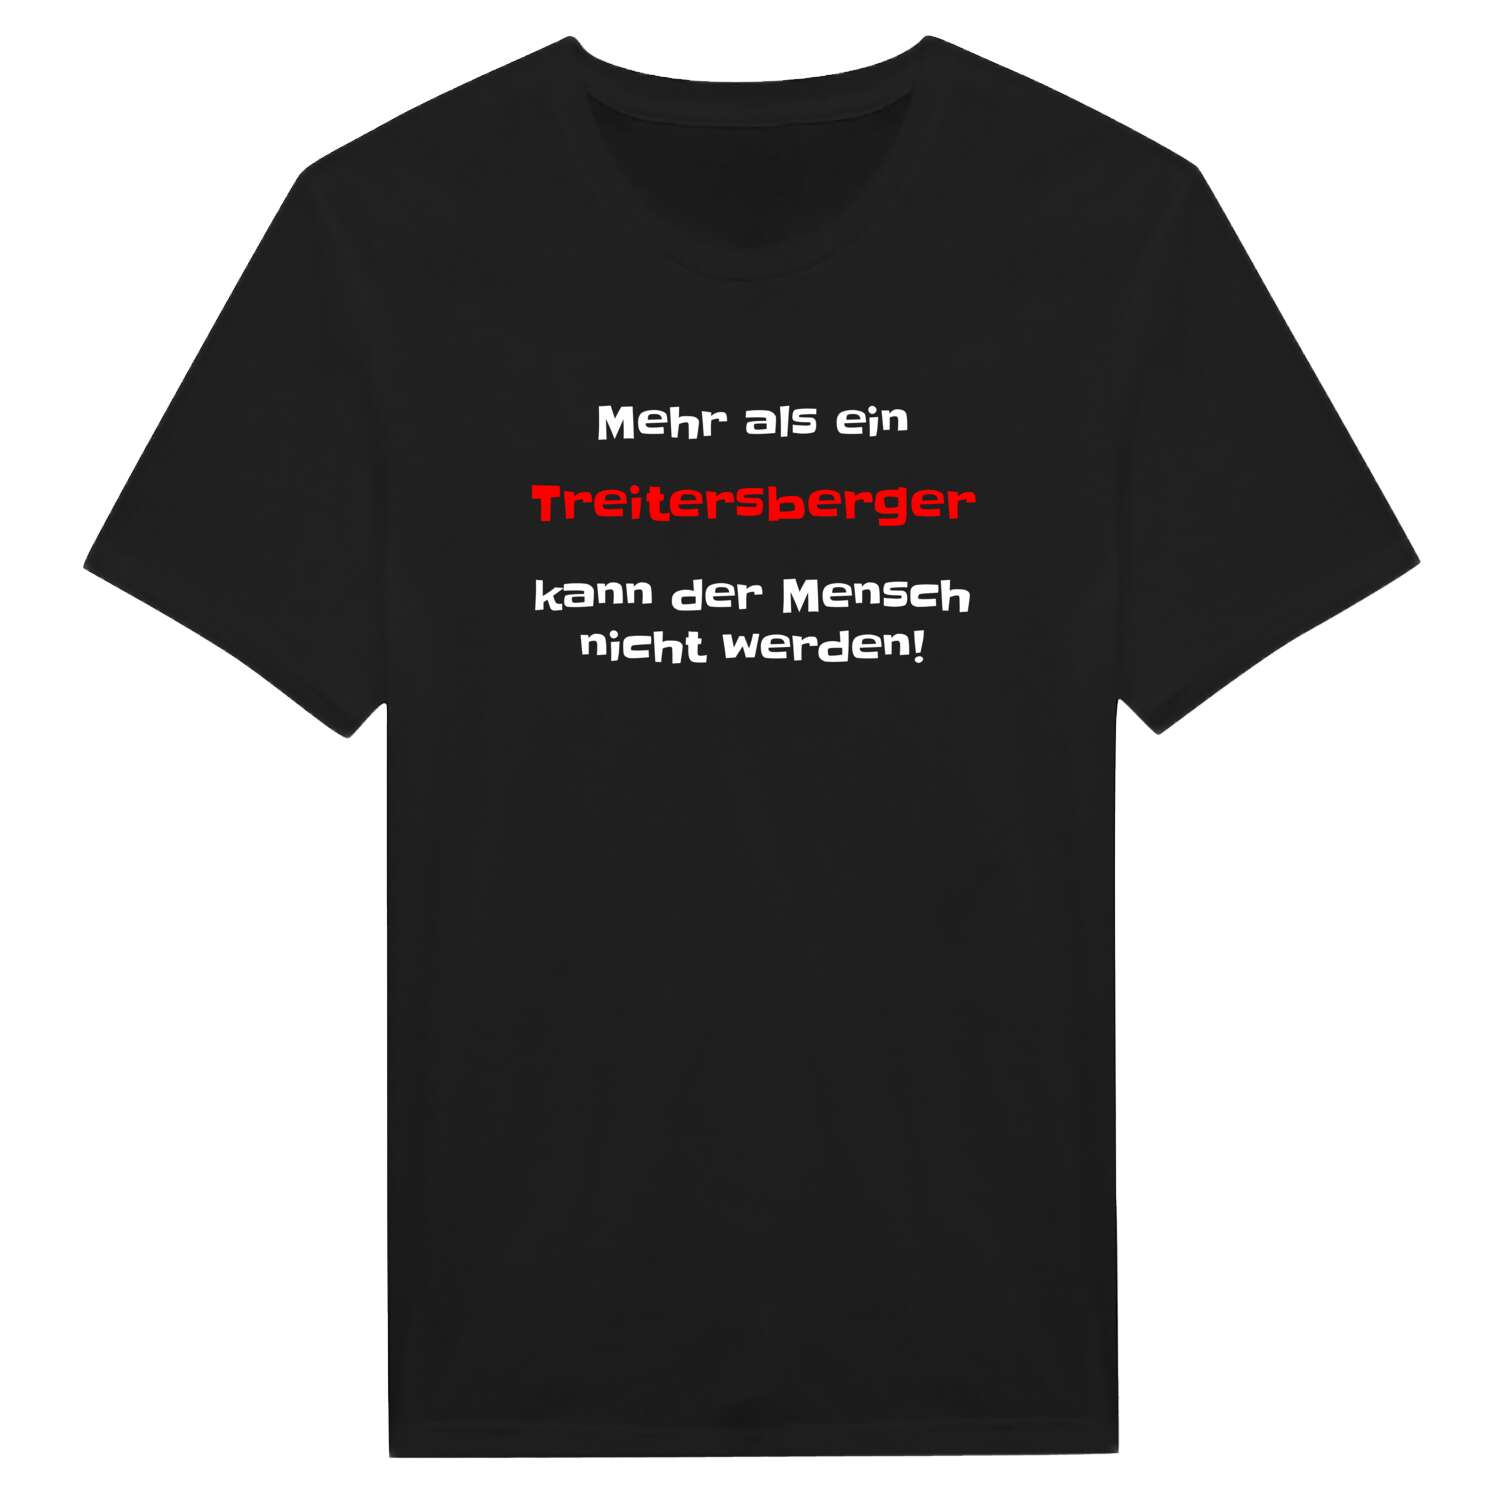 Treitersberg T-Shirt »Mehr als ein«